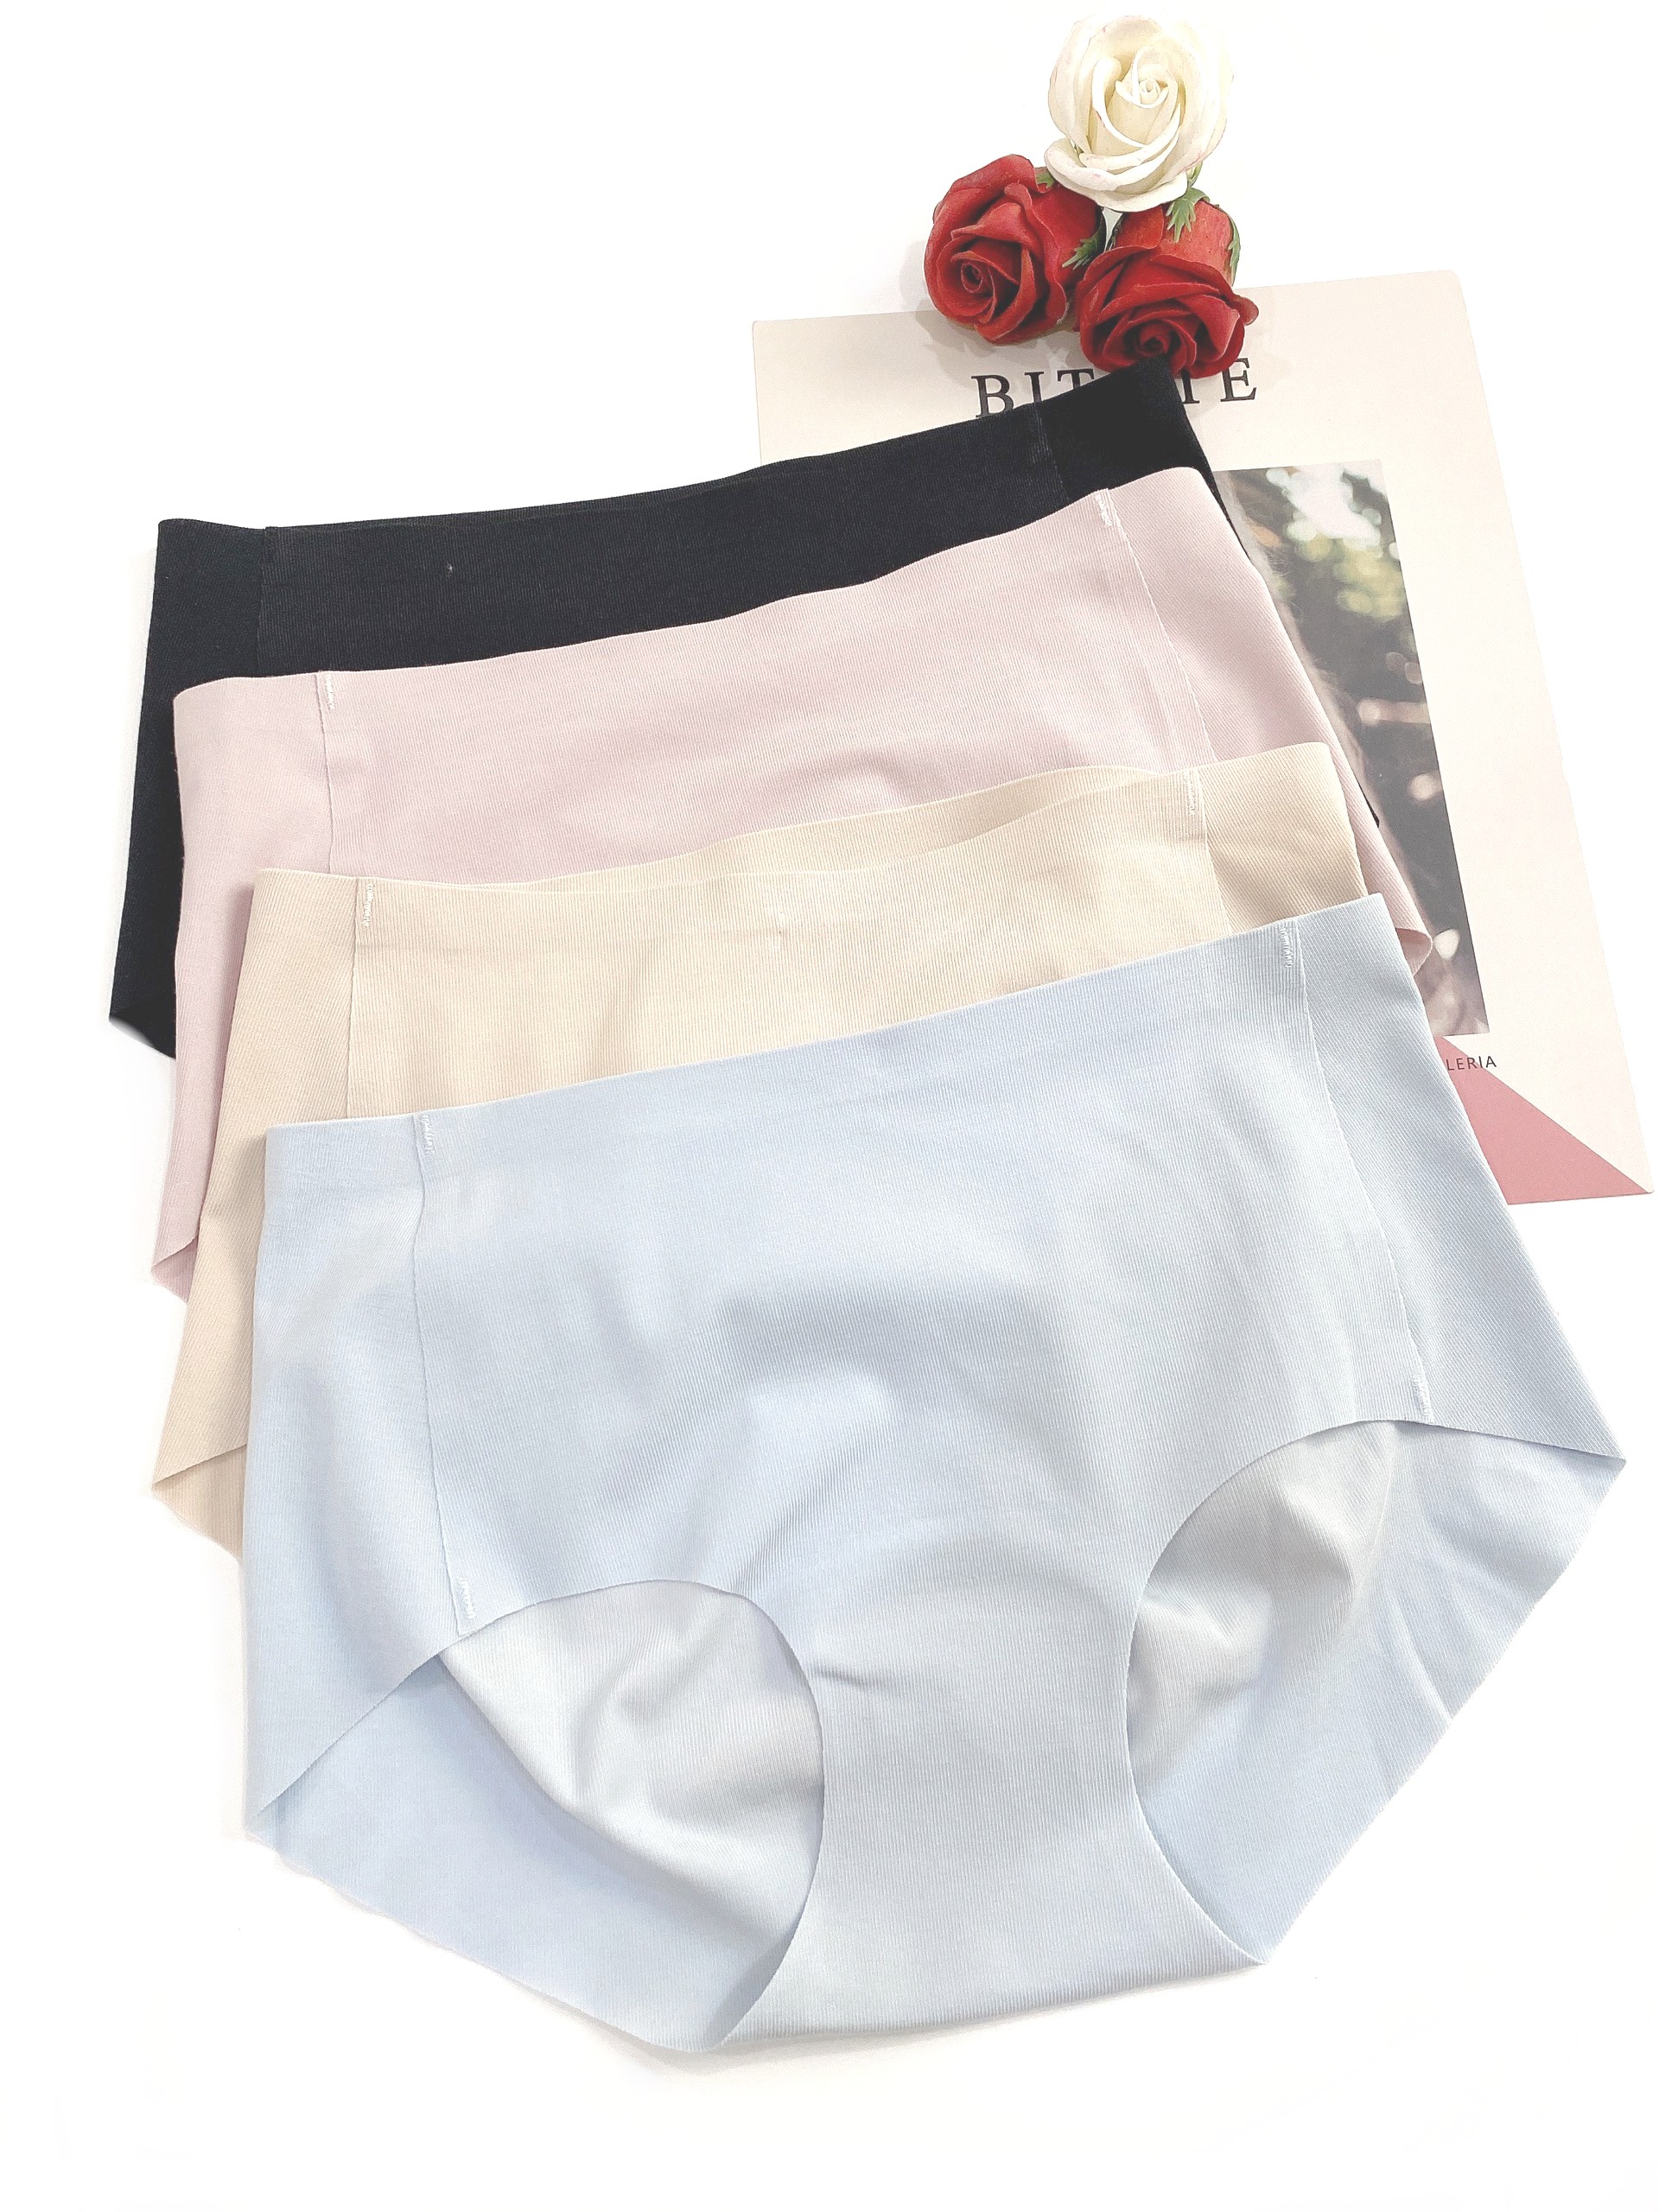 Quần lót nữ Sayhome F133955-cotton màu đen ,xanh dương,hồng,da 